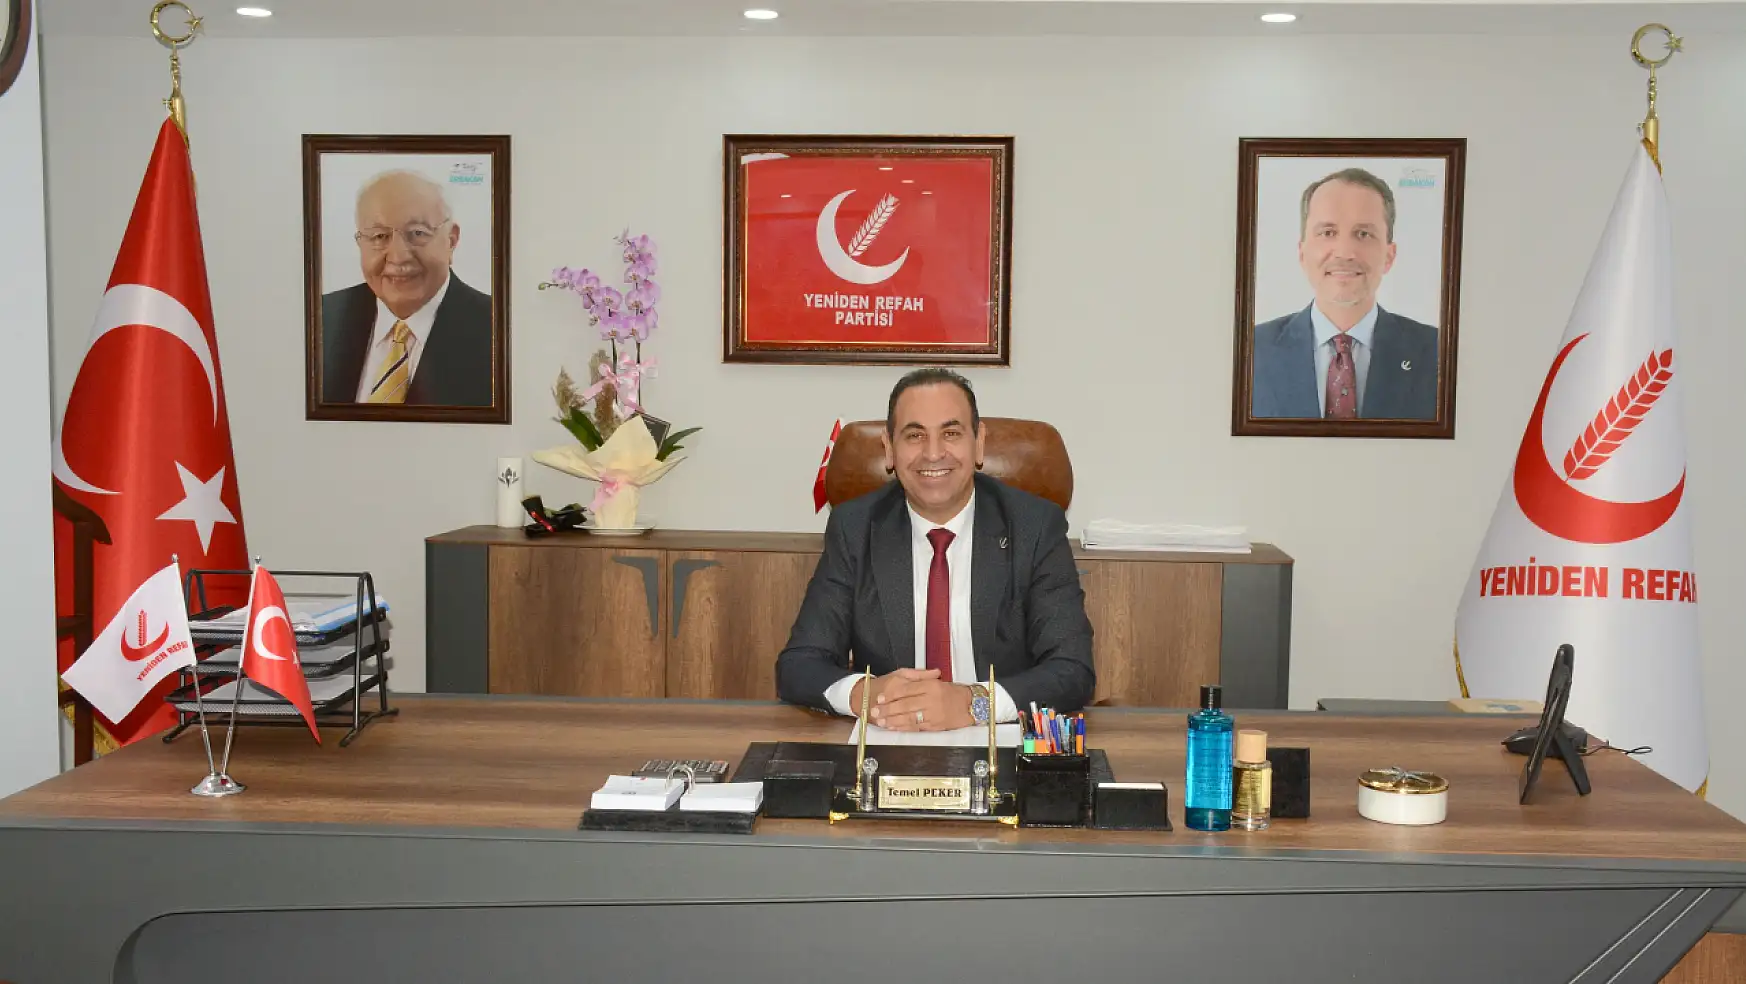 Yeniden Refah Partisi Konya İl Başkanı Temel Peker 90 Günü Değerlendirdi!